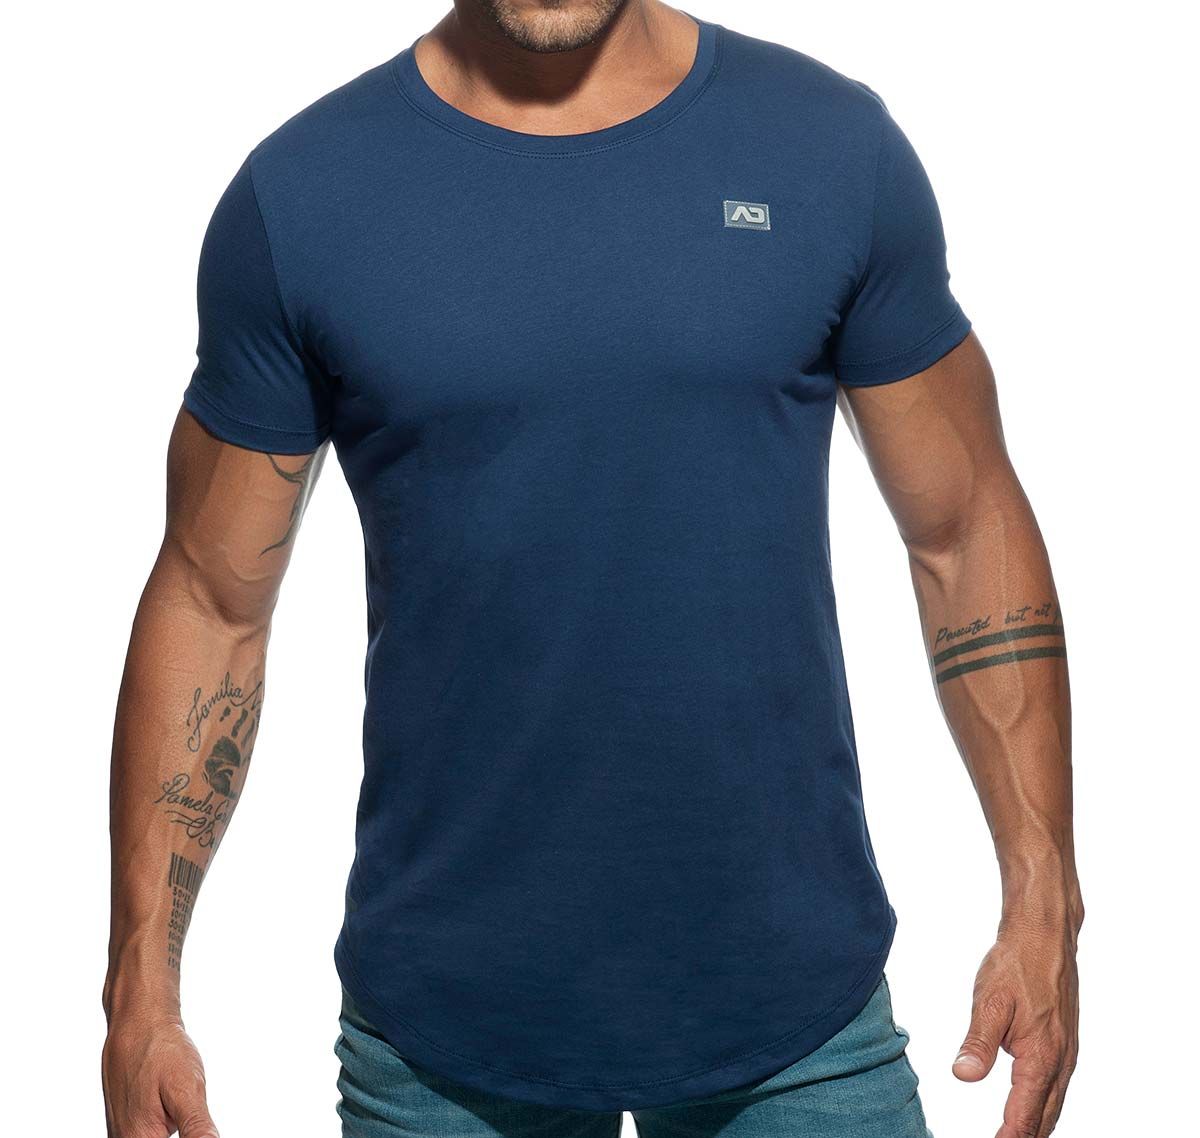 Addicted Camiseta BASIC U-NECK T-SHIRT AD696, azul marino